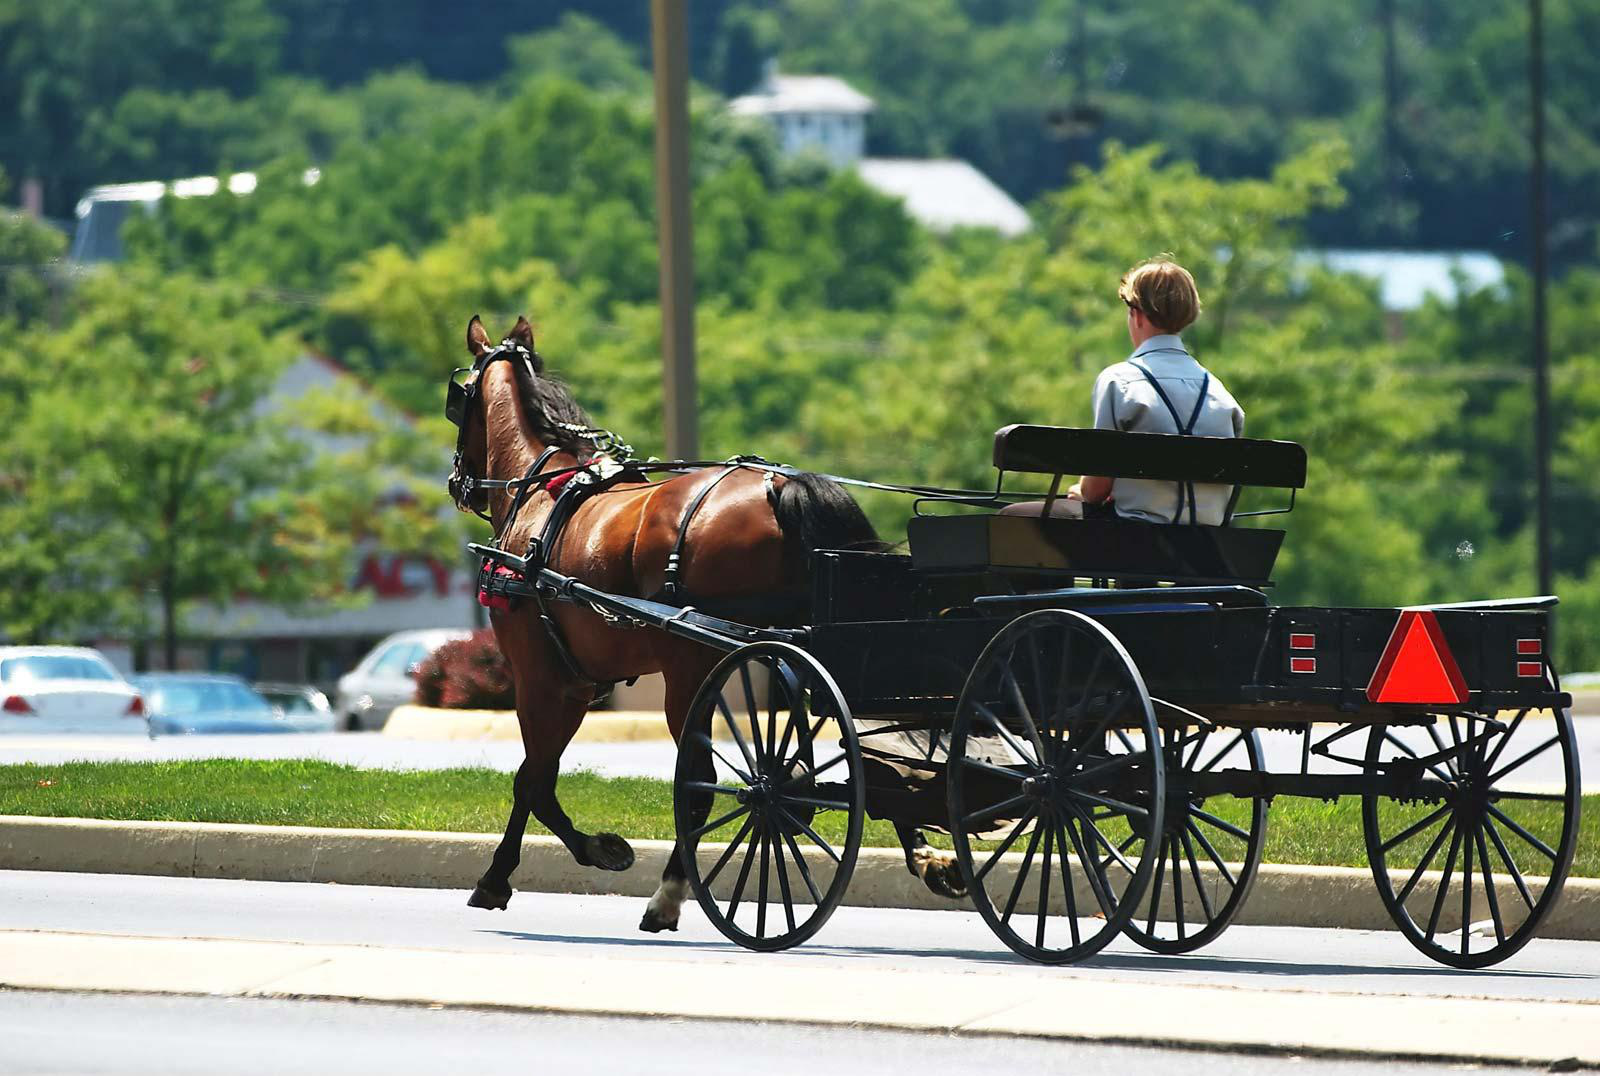 Cuộc sống kỳ lạ của tộc người Amish chối bỏ ô tô, tivi... giữa lòng nước Mỹ - Ảnh 3.